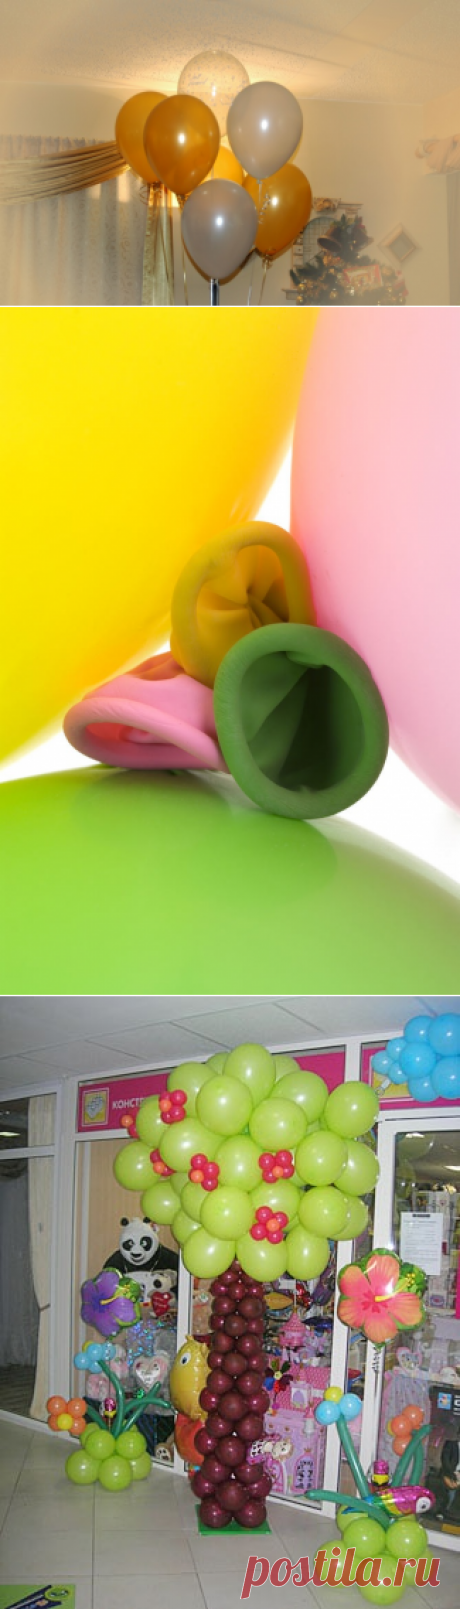 Как украсить комнату шариками :: украшение комнаты шарами :: Дни рождения и юбилеи :: KakProsto.ru: как просто сделать всё